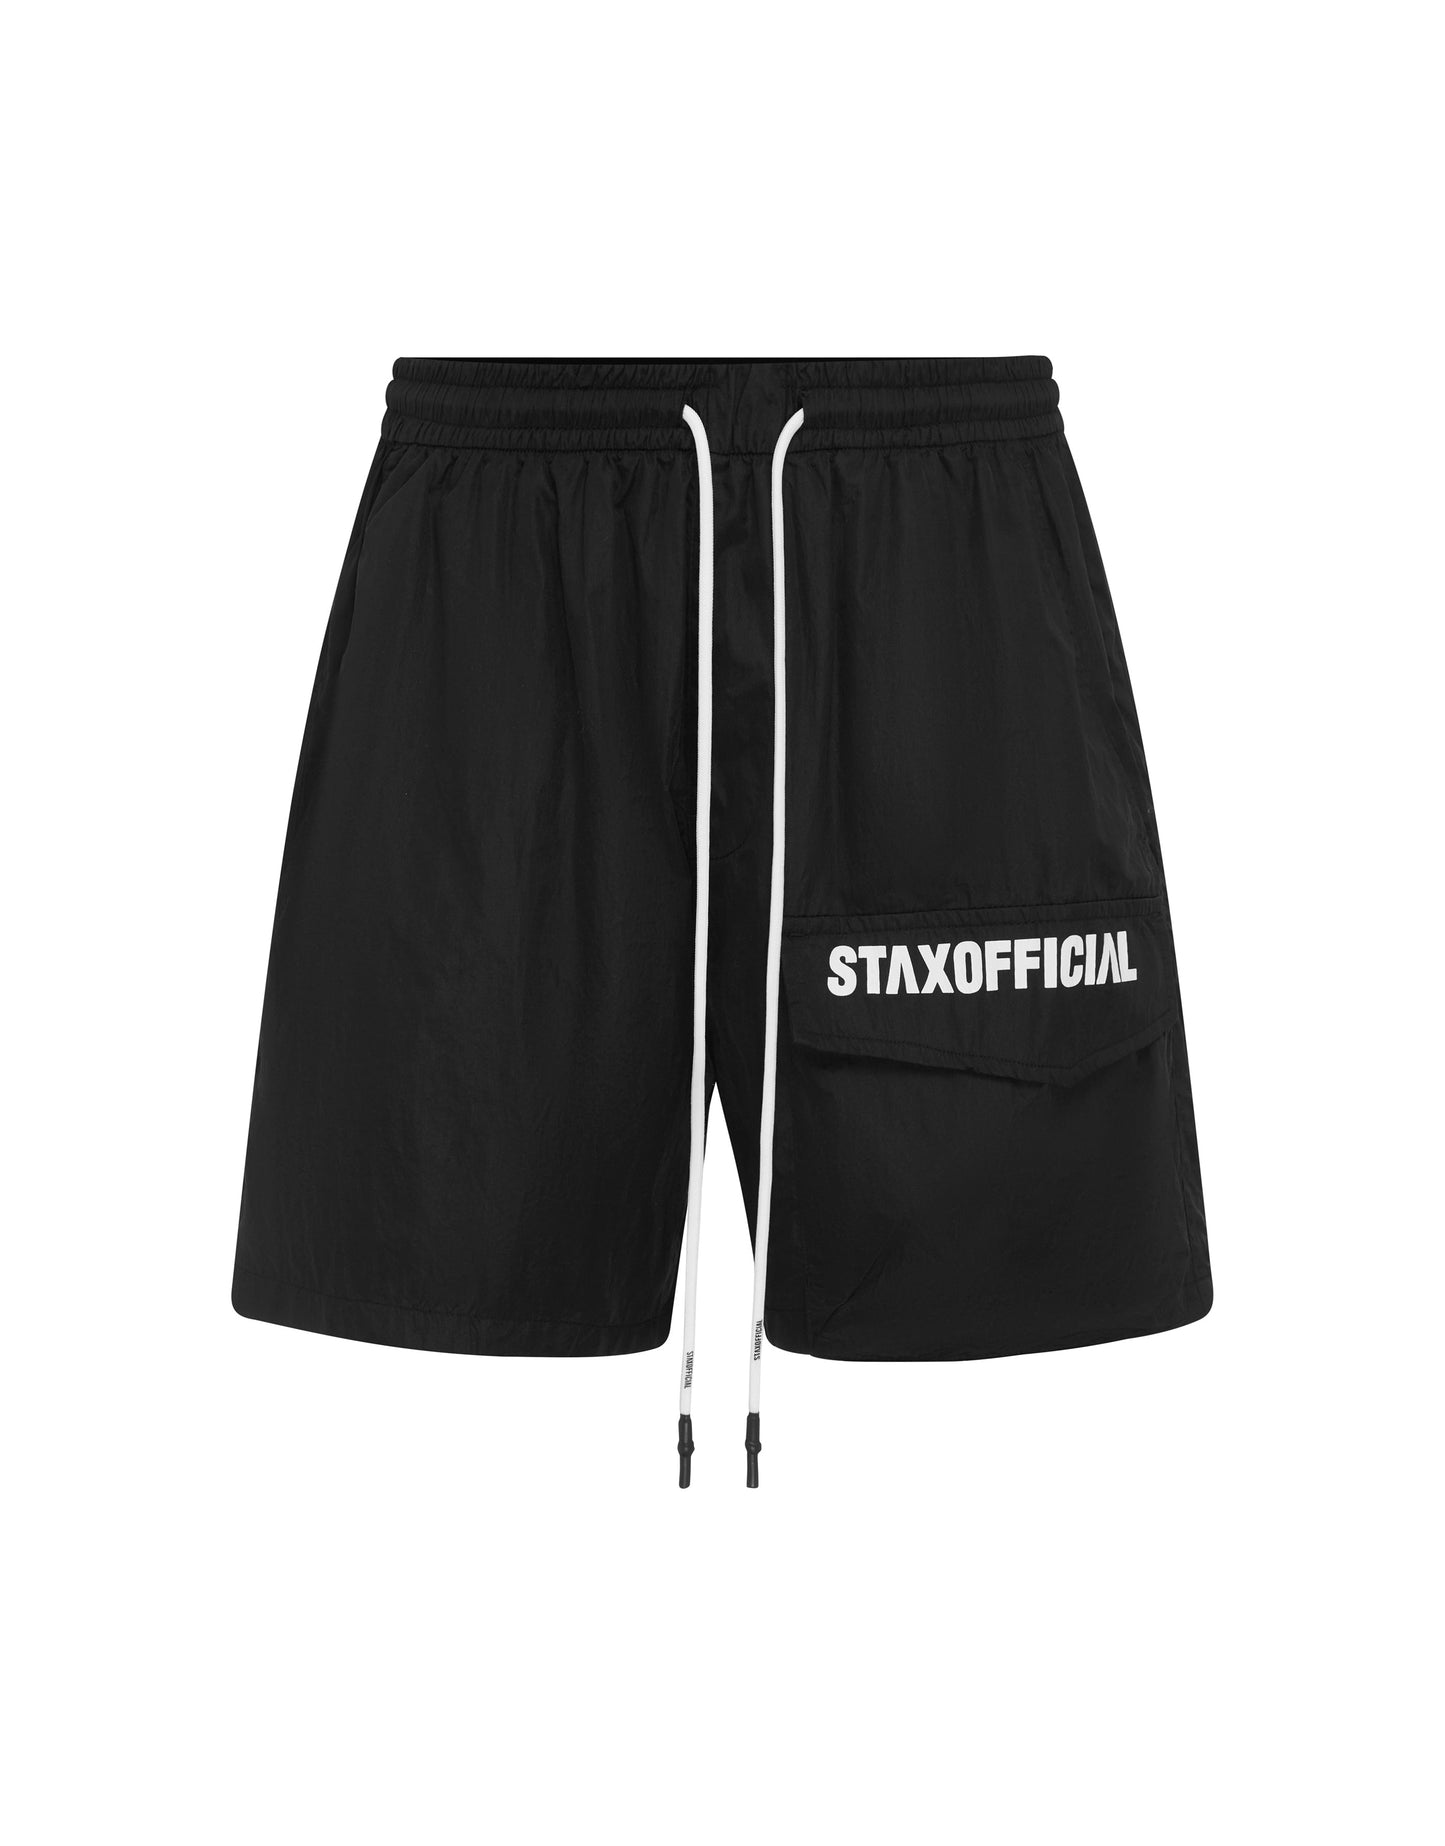 Mens Triple S Nylon Shorts - Black